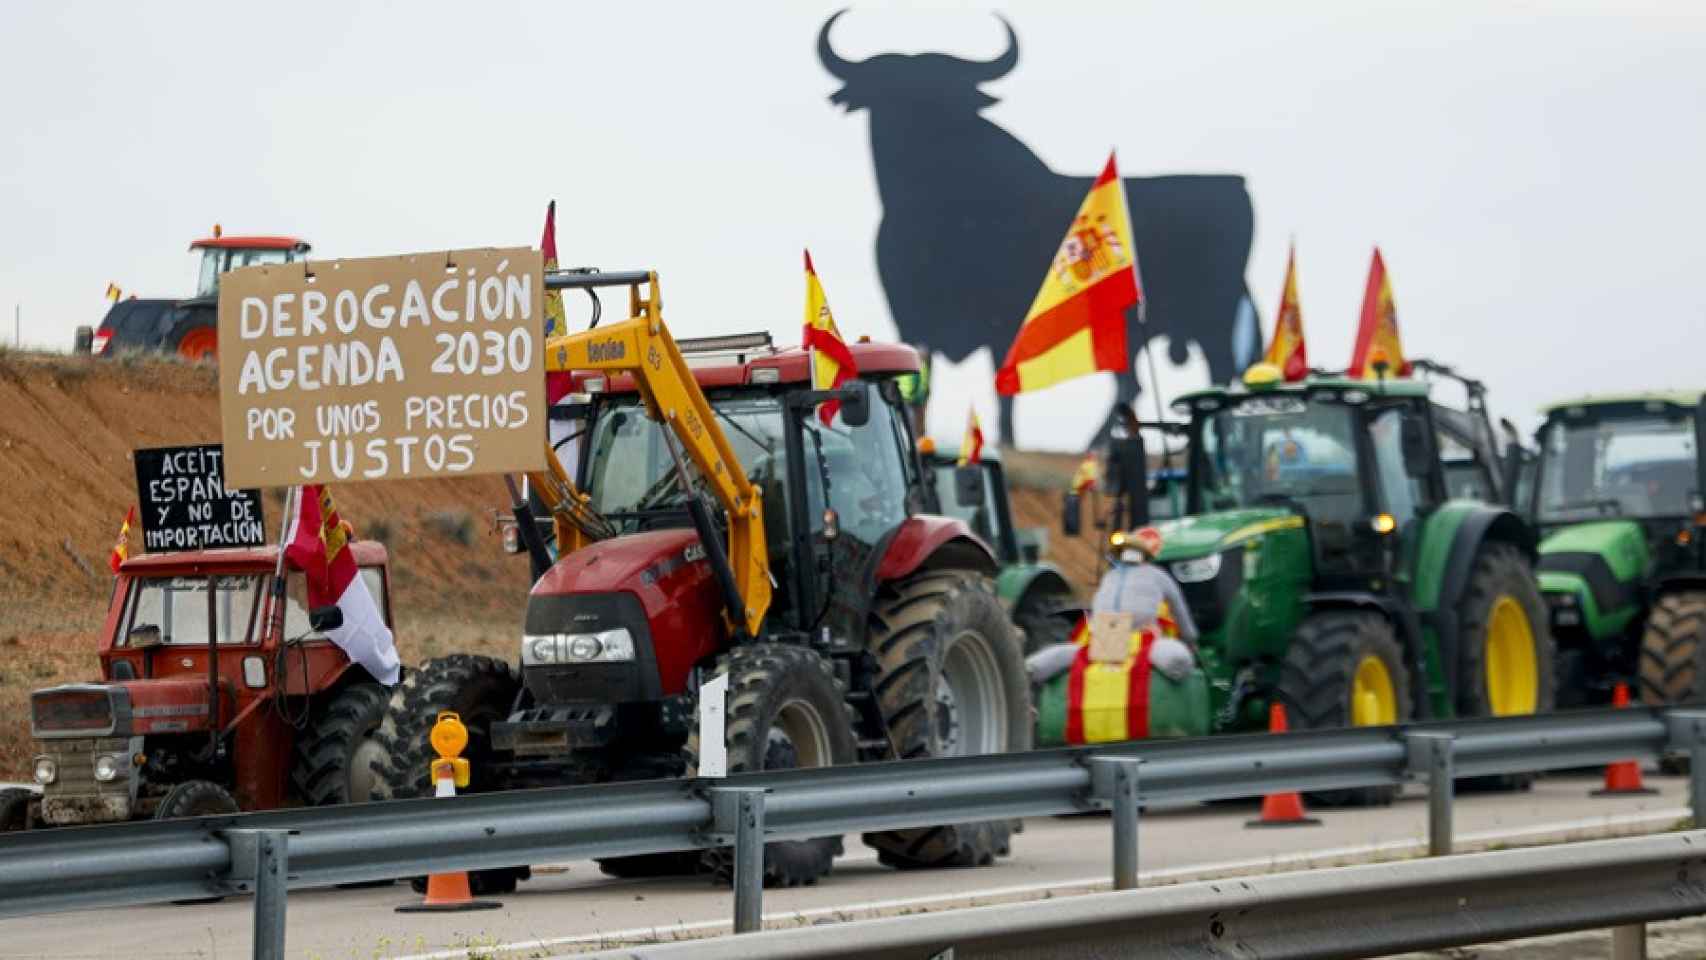 Vista de la concentración de tractores en la A4 a la altura de Madridejos (Toledo) ayer martes.